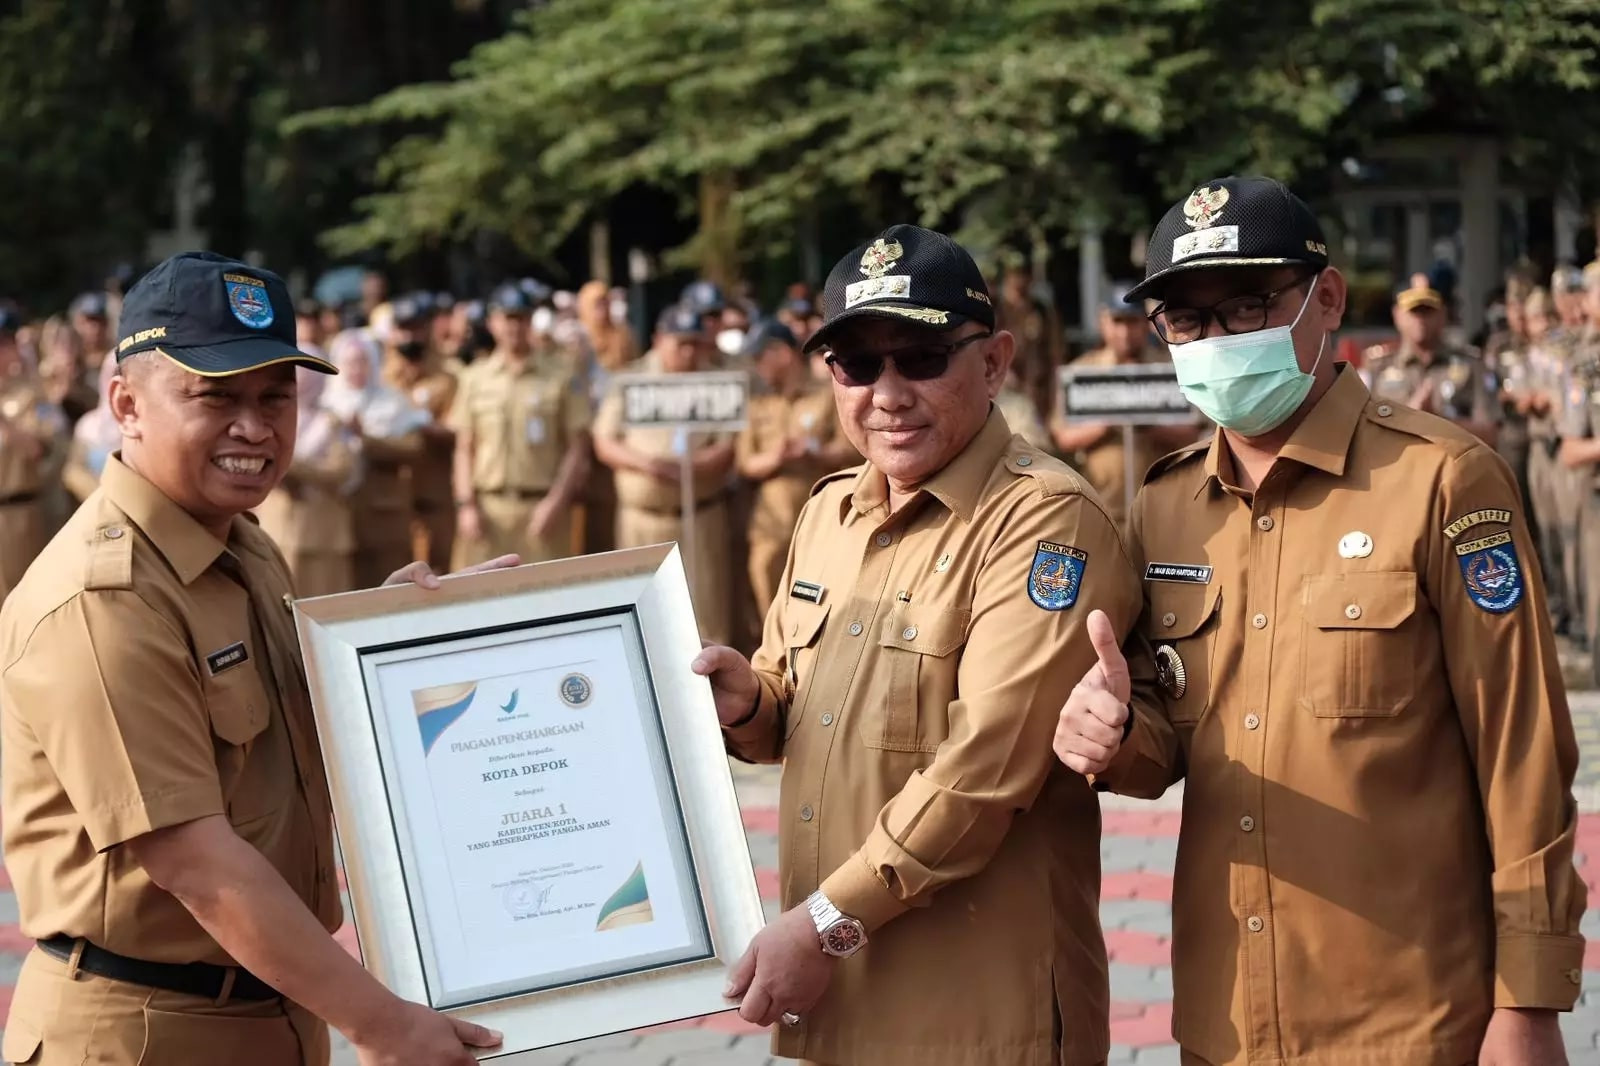 Raih Juara 1, Kota Depok Dapat Penghargaan Sebagai Kota Pangan Aman dari Badan Pengawas Obat dan Mak